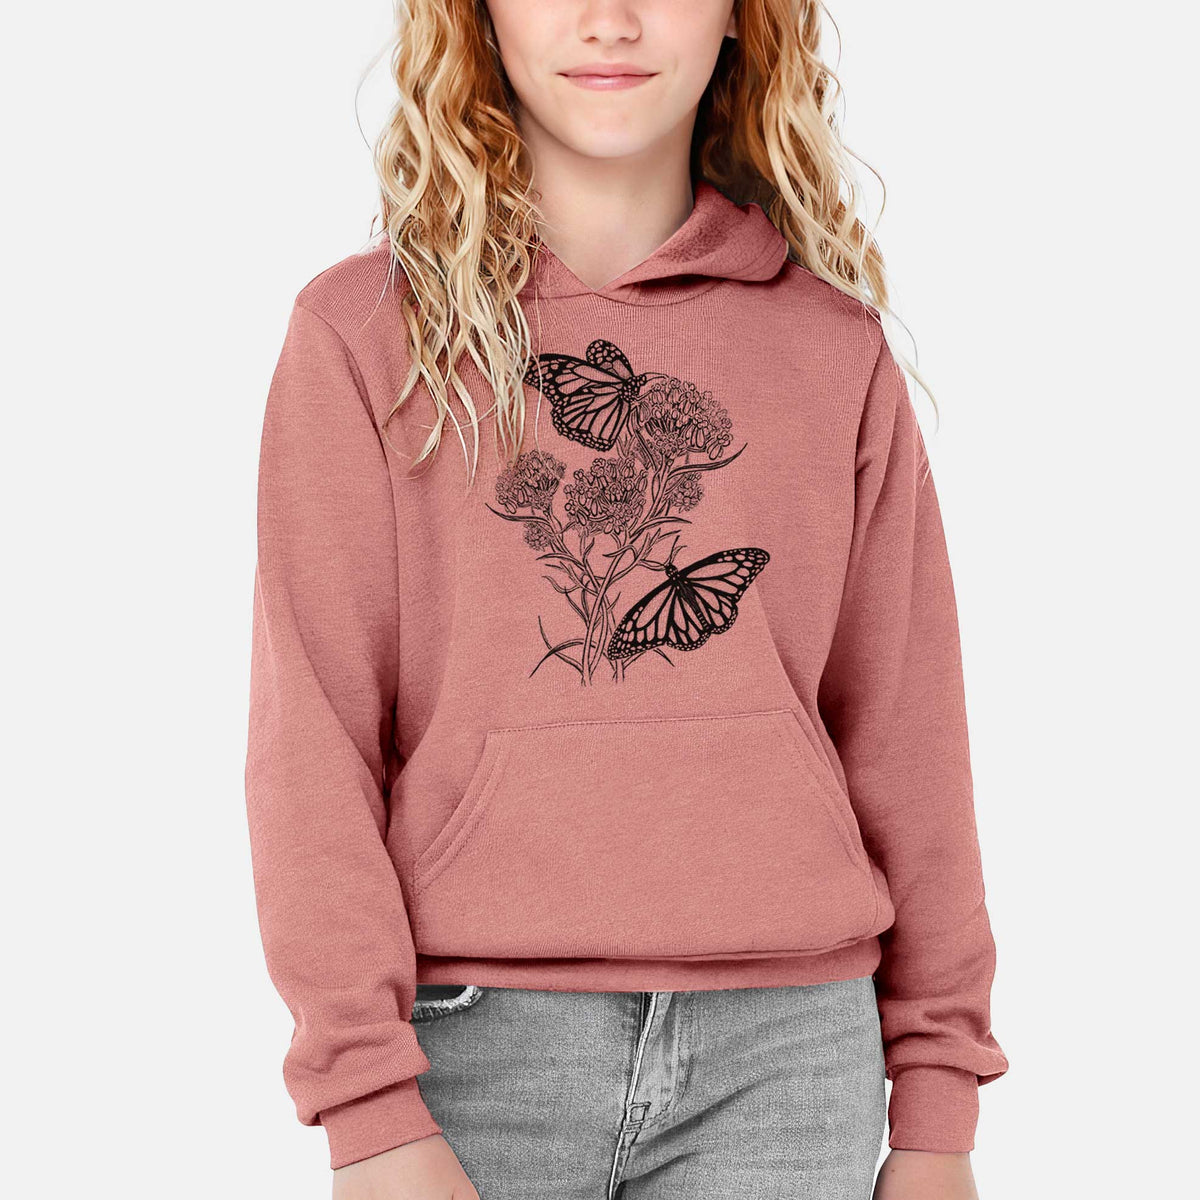 Narrowleaf Milkweed with Monarchs - Youth Hoodie Sweatshirt